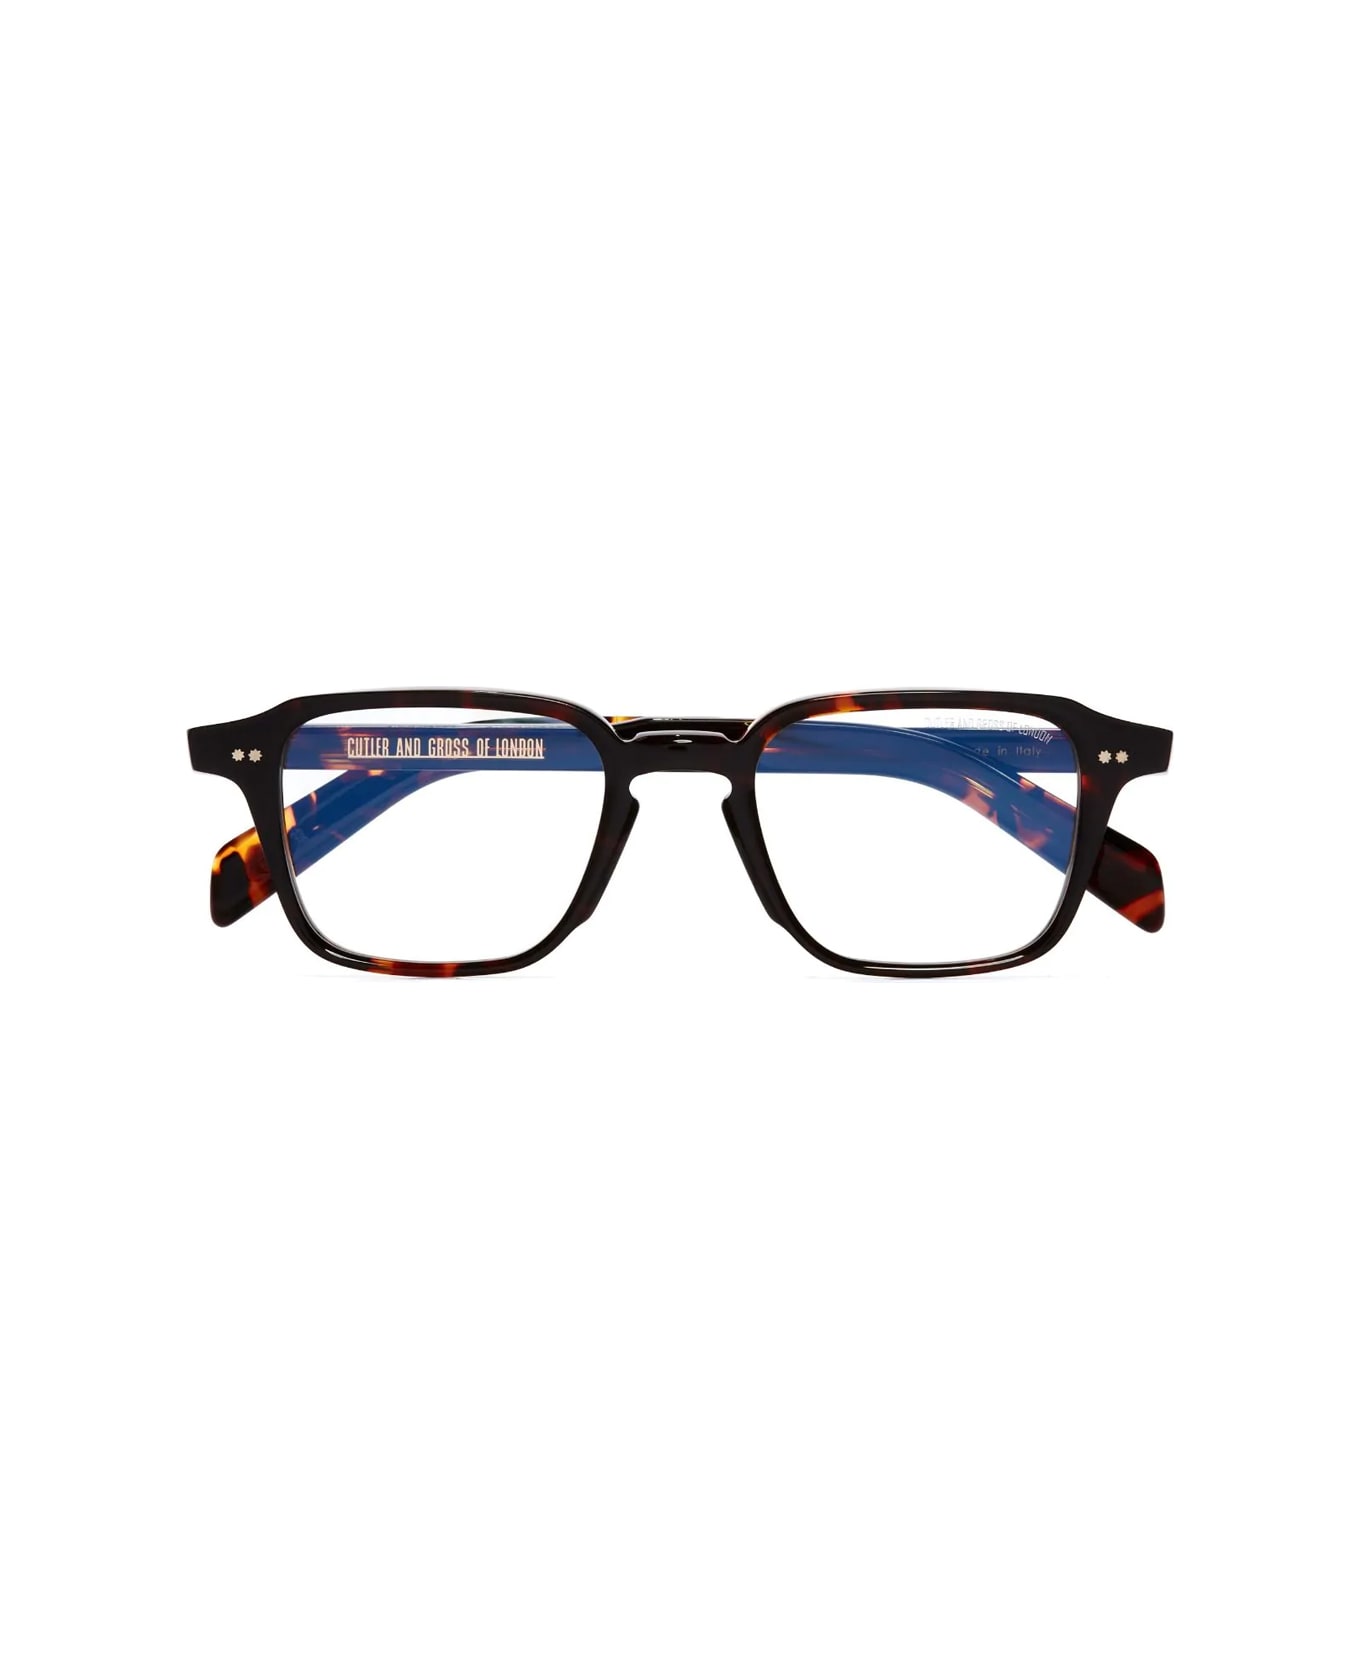 Cutler and Gross Gr07 02 Multi Havana Glasses - Marrone